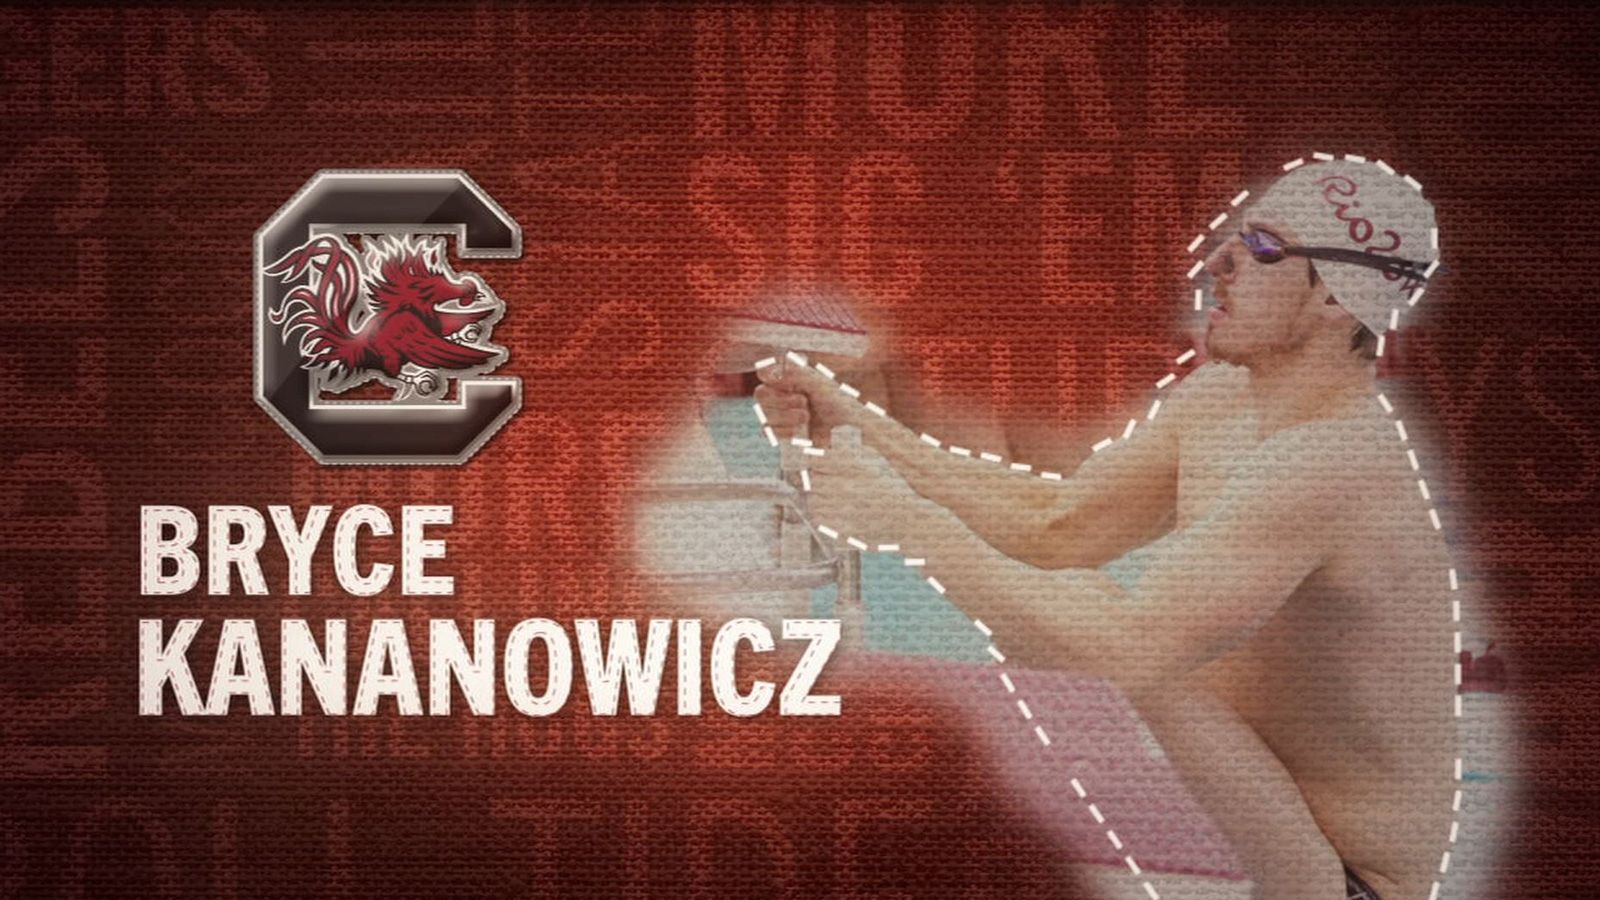 I am the SEC: South Carolina's Bryce Kananowicz